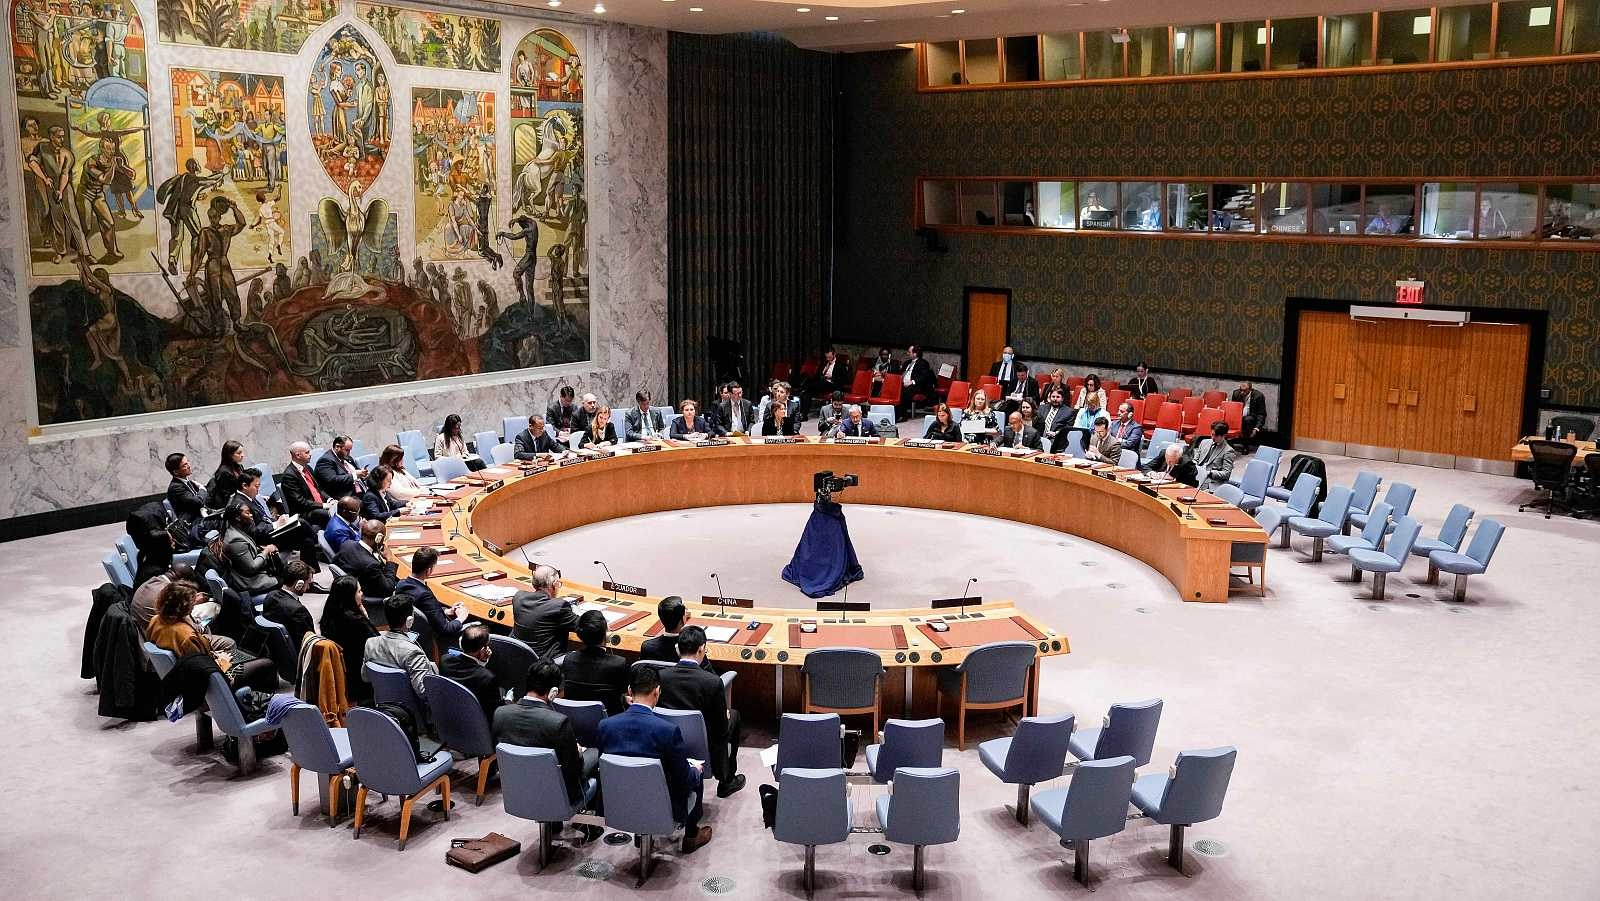 Esto se debe a que el Consejo de Seguridad tiene como responsabilidad principal el mantenimiento de la paz y la seguridad internacionales.